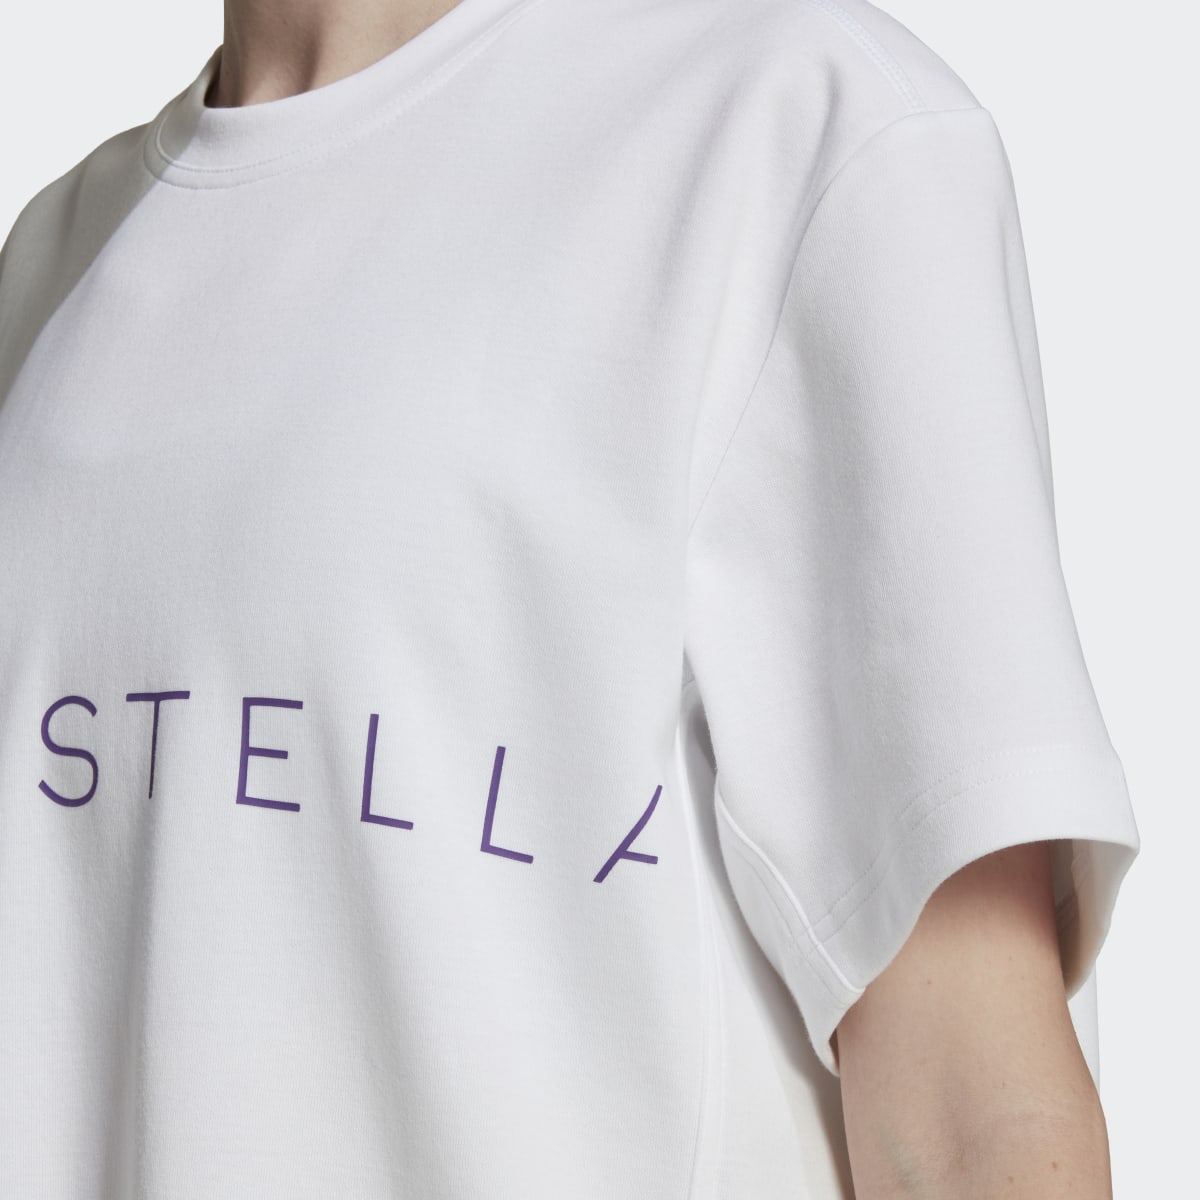 Adidas by Stella McCartney Logo T-Shirt. 6